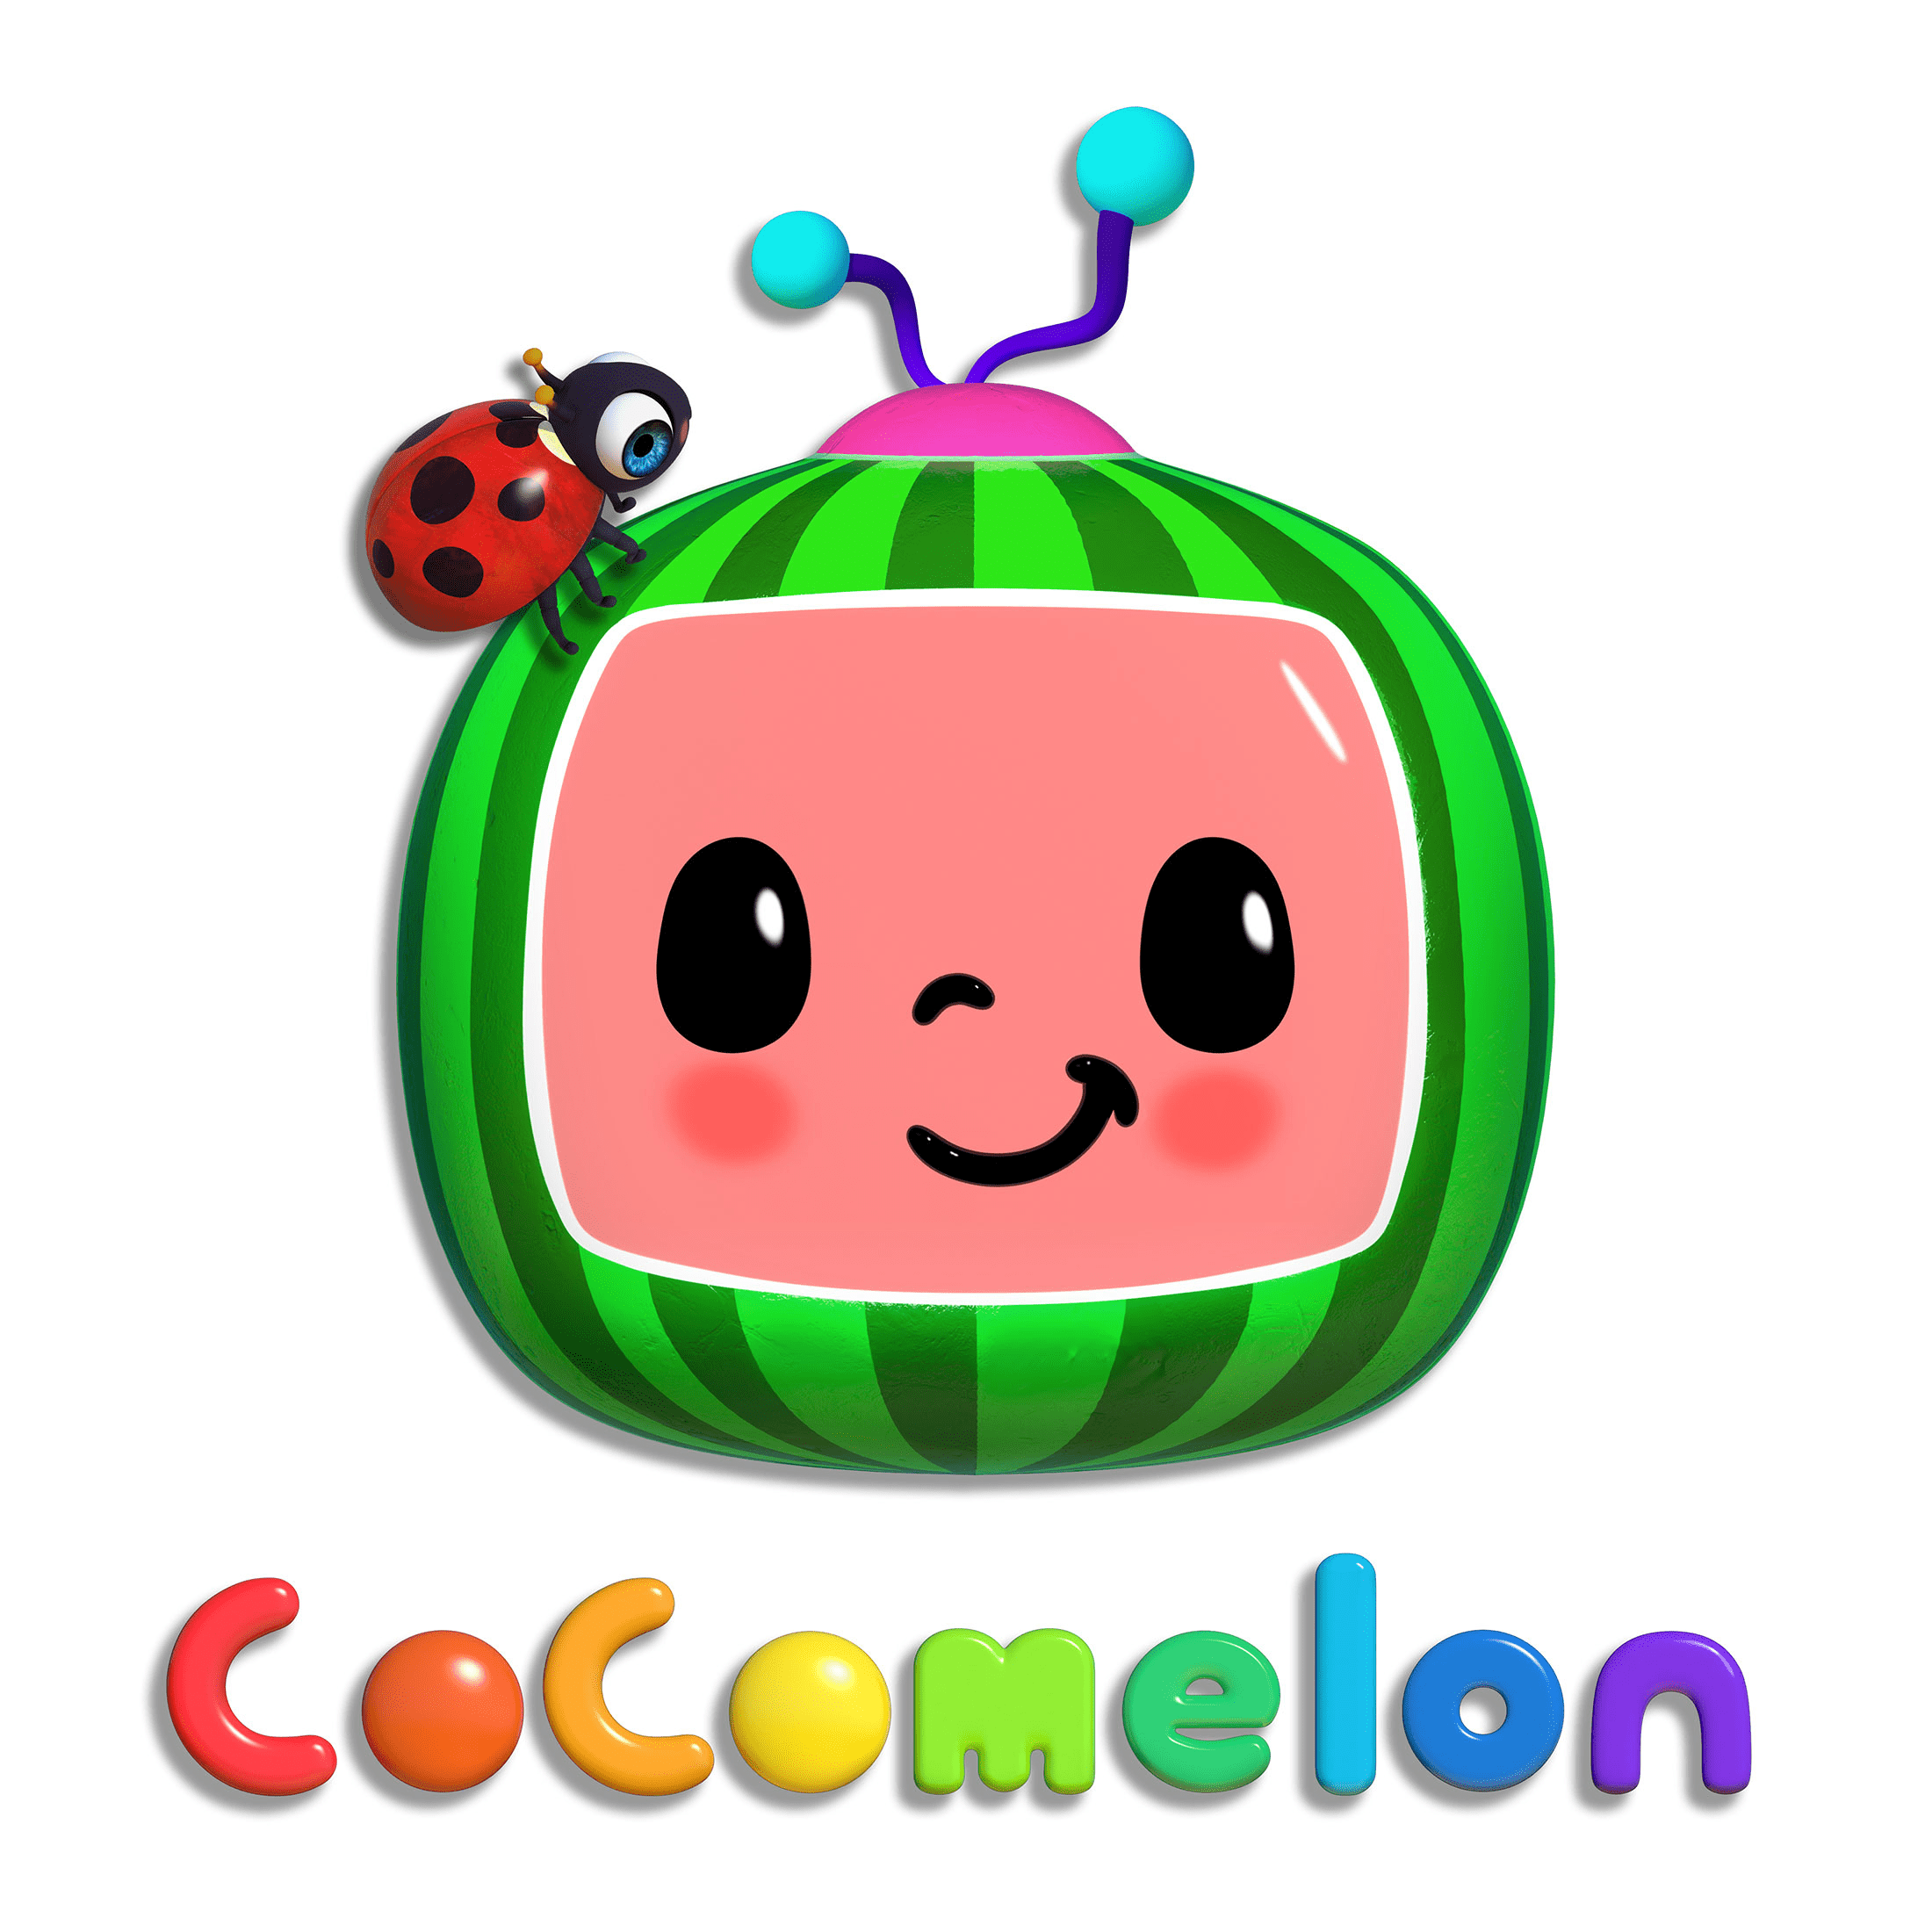 Cocomelon Theme Colors